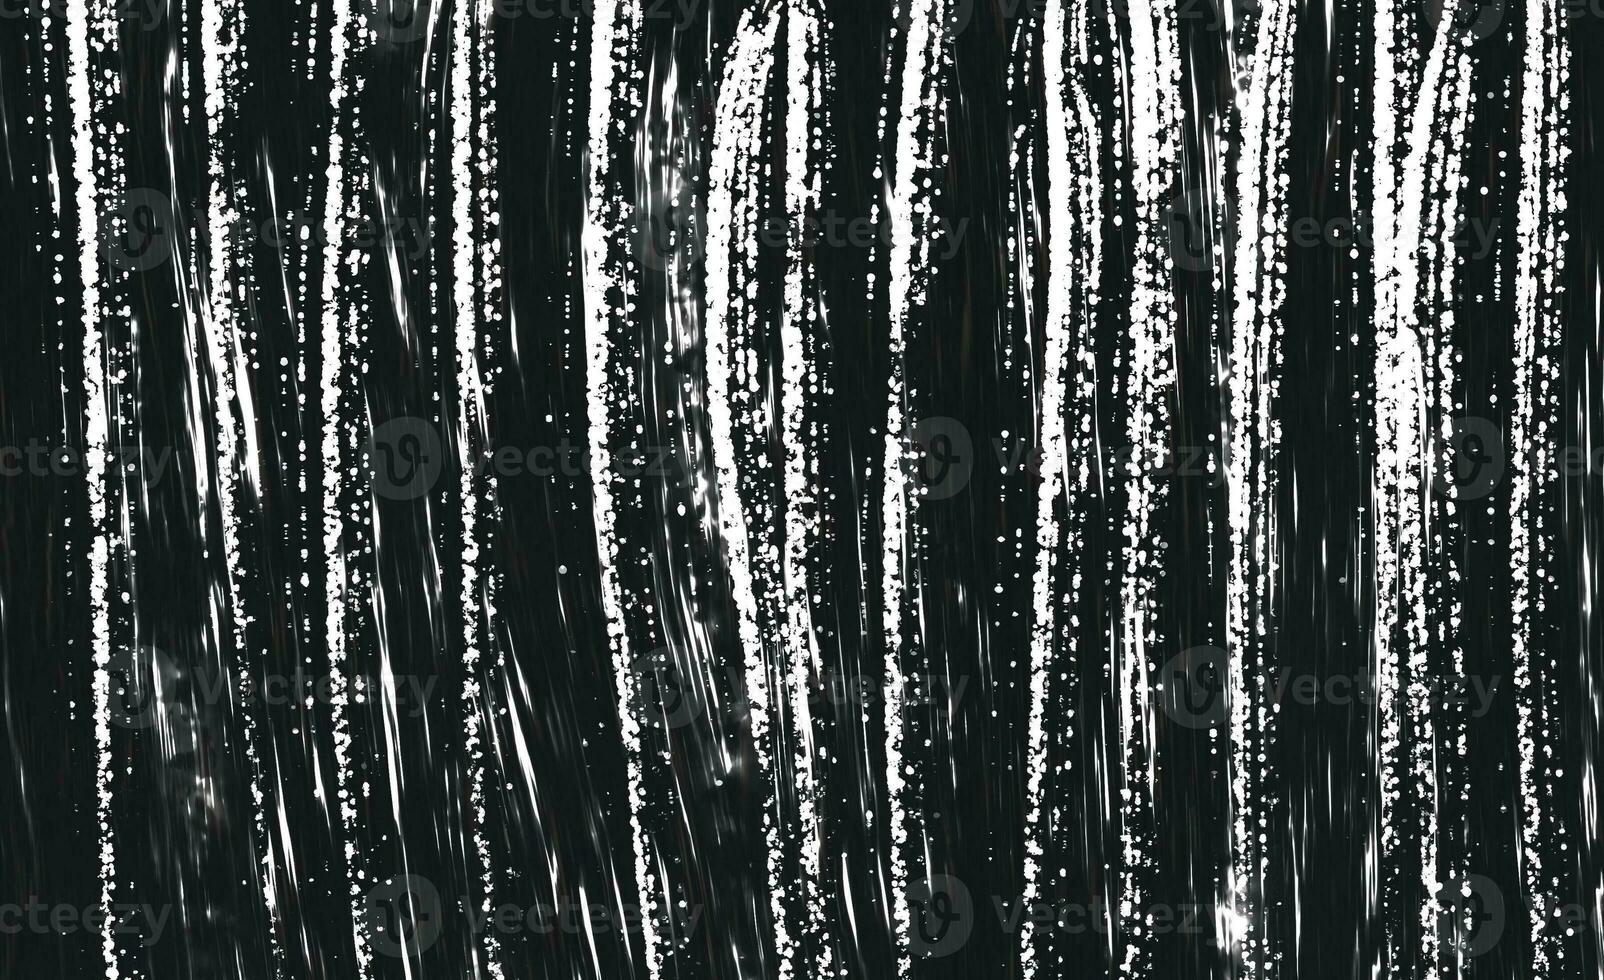 svart och vit grunge. nödöverlagringsstruktur. abstrakt yta damm och grov smutsig vägg bakgrund concept.abstract kornig bakgrund, gammal målad vägg foto